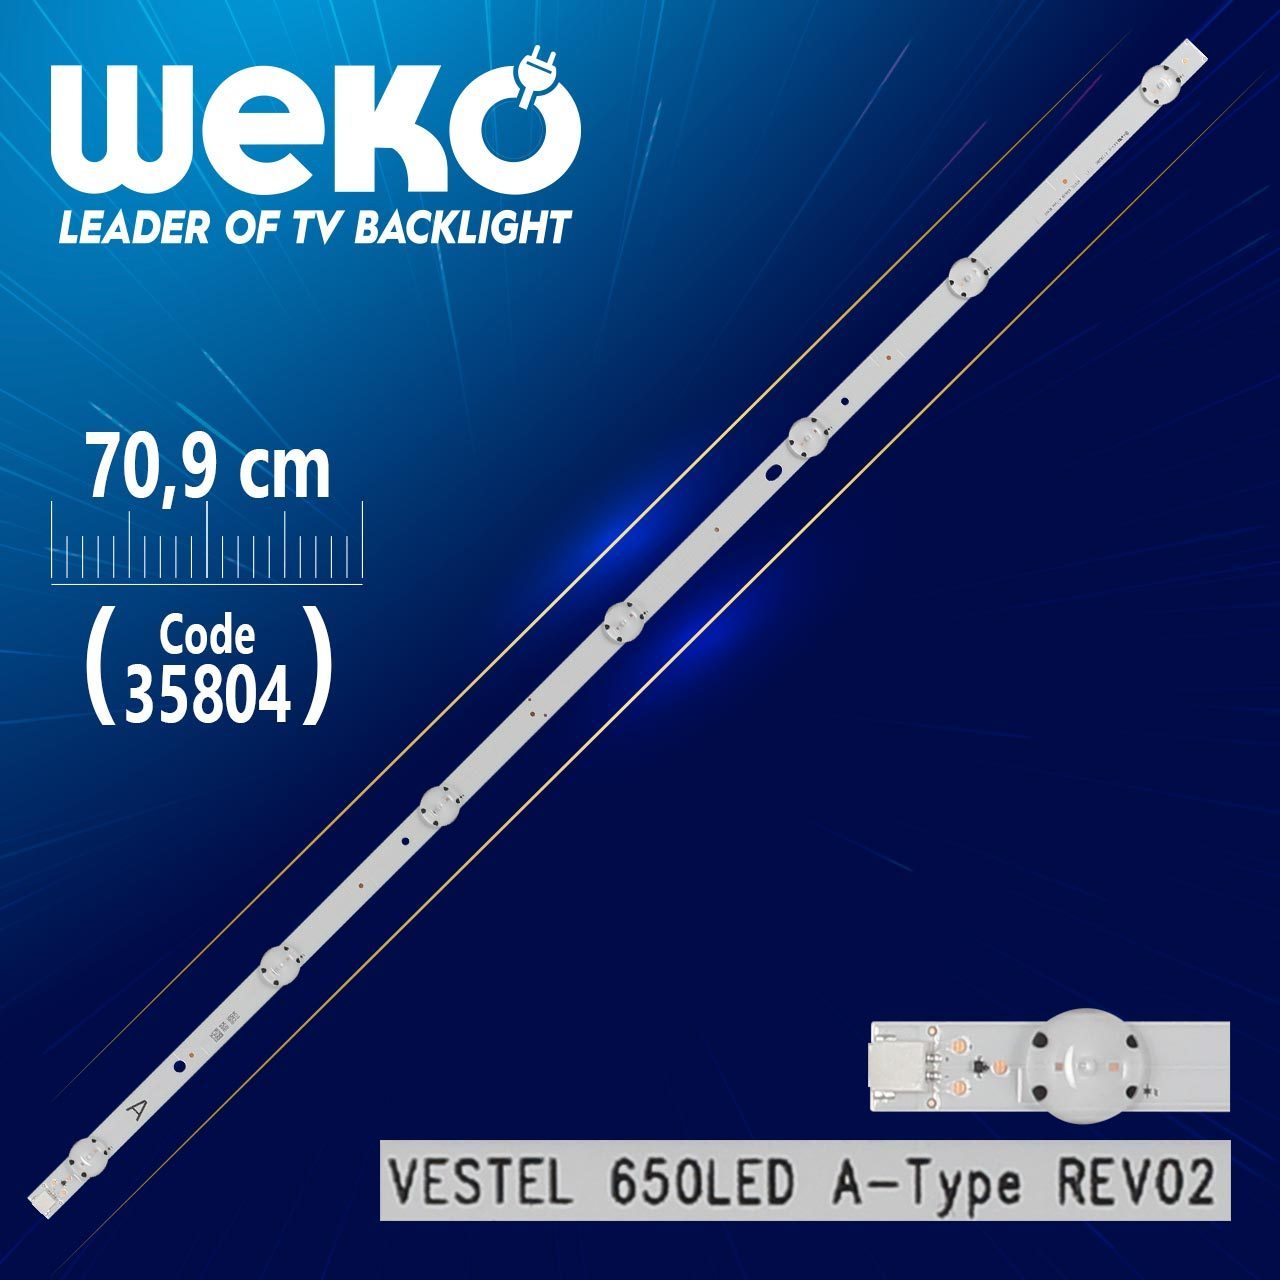 Vestel 650led A-type Rev02 - 70.9 Cm 7 Ledli - (wk-1269) (4172)